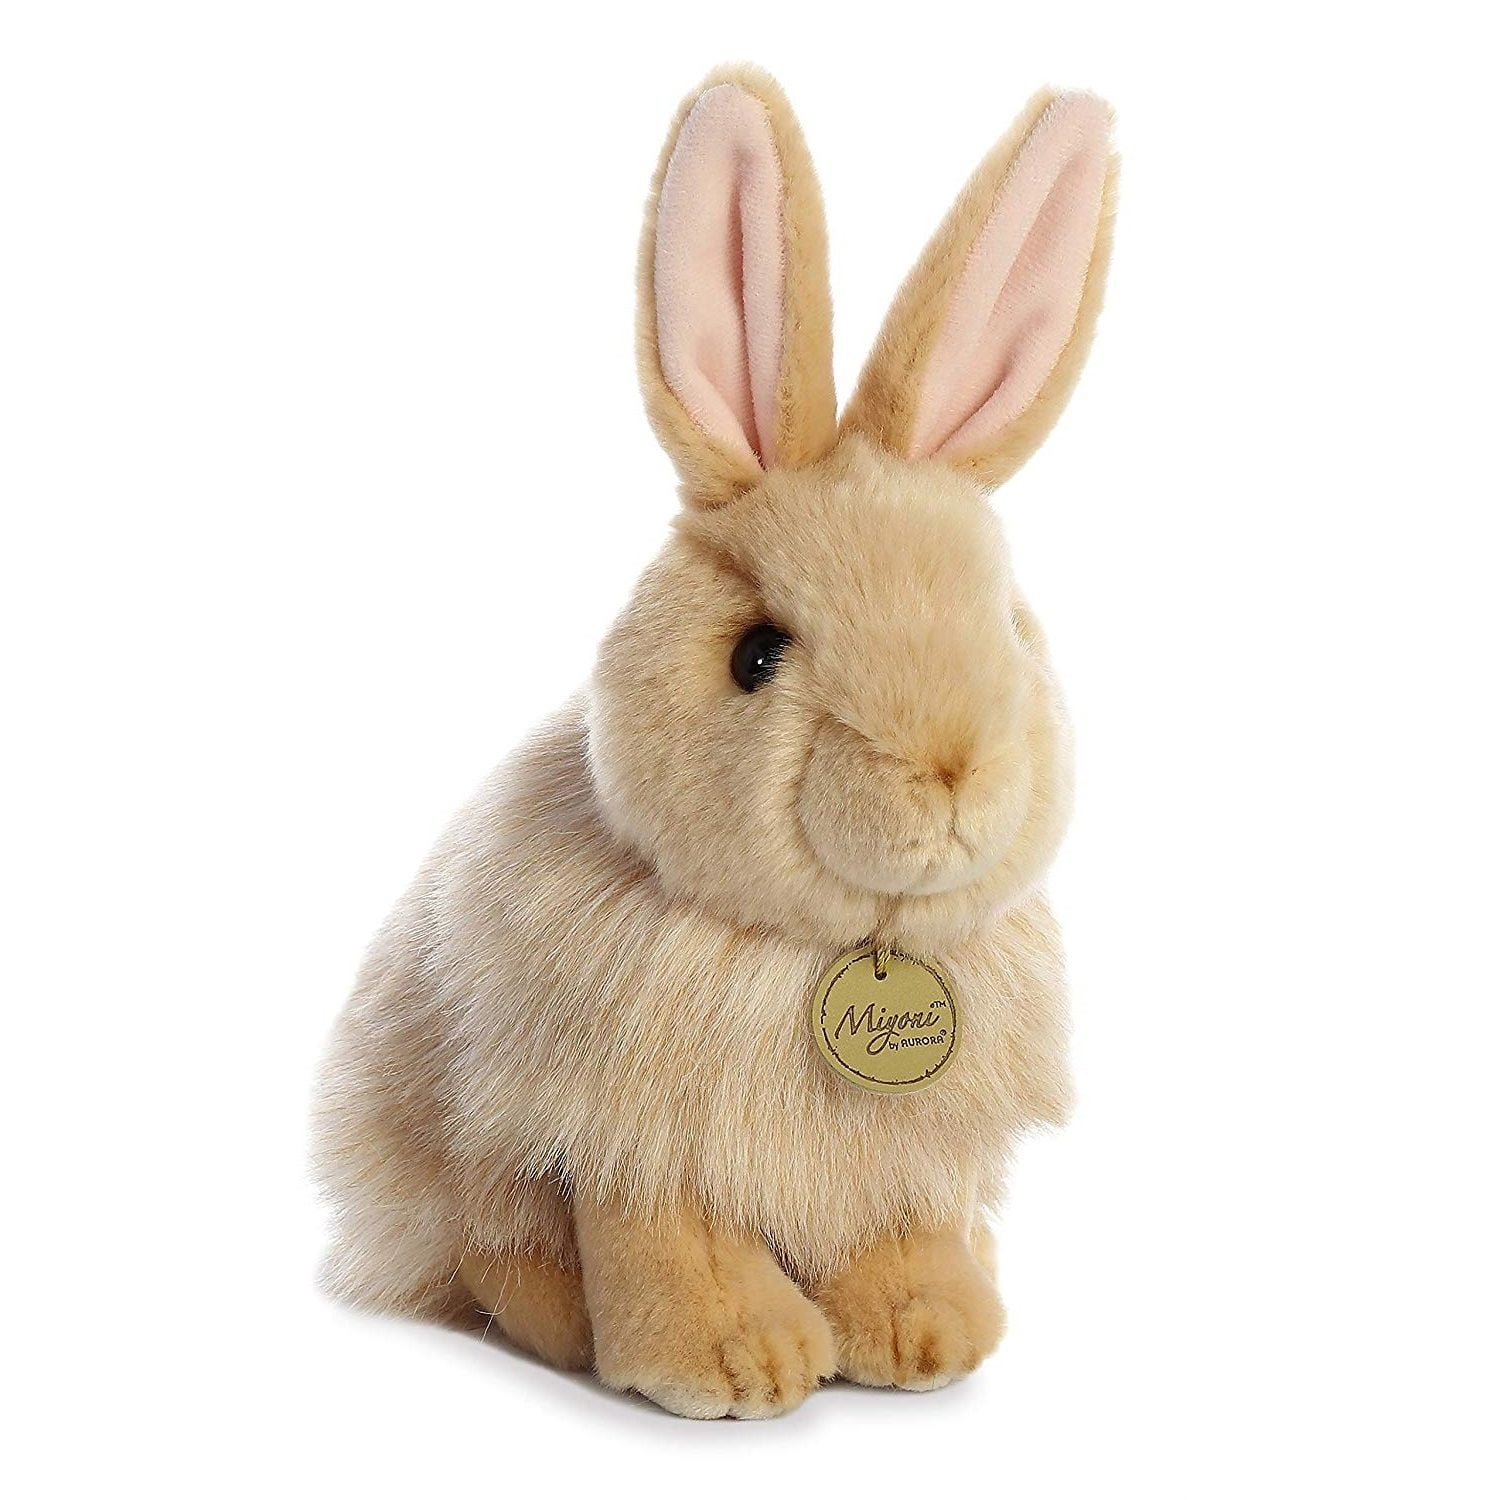 Lop Eared Bunny Rabbit Sitting Miyoni 7.5-10 in Plush Stuffed Toy Animal AU26171 